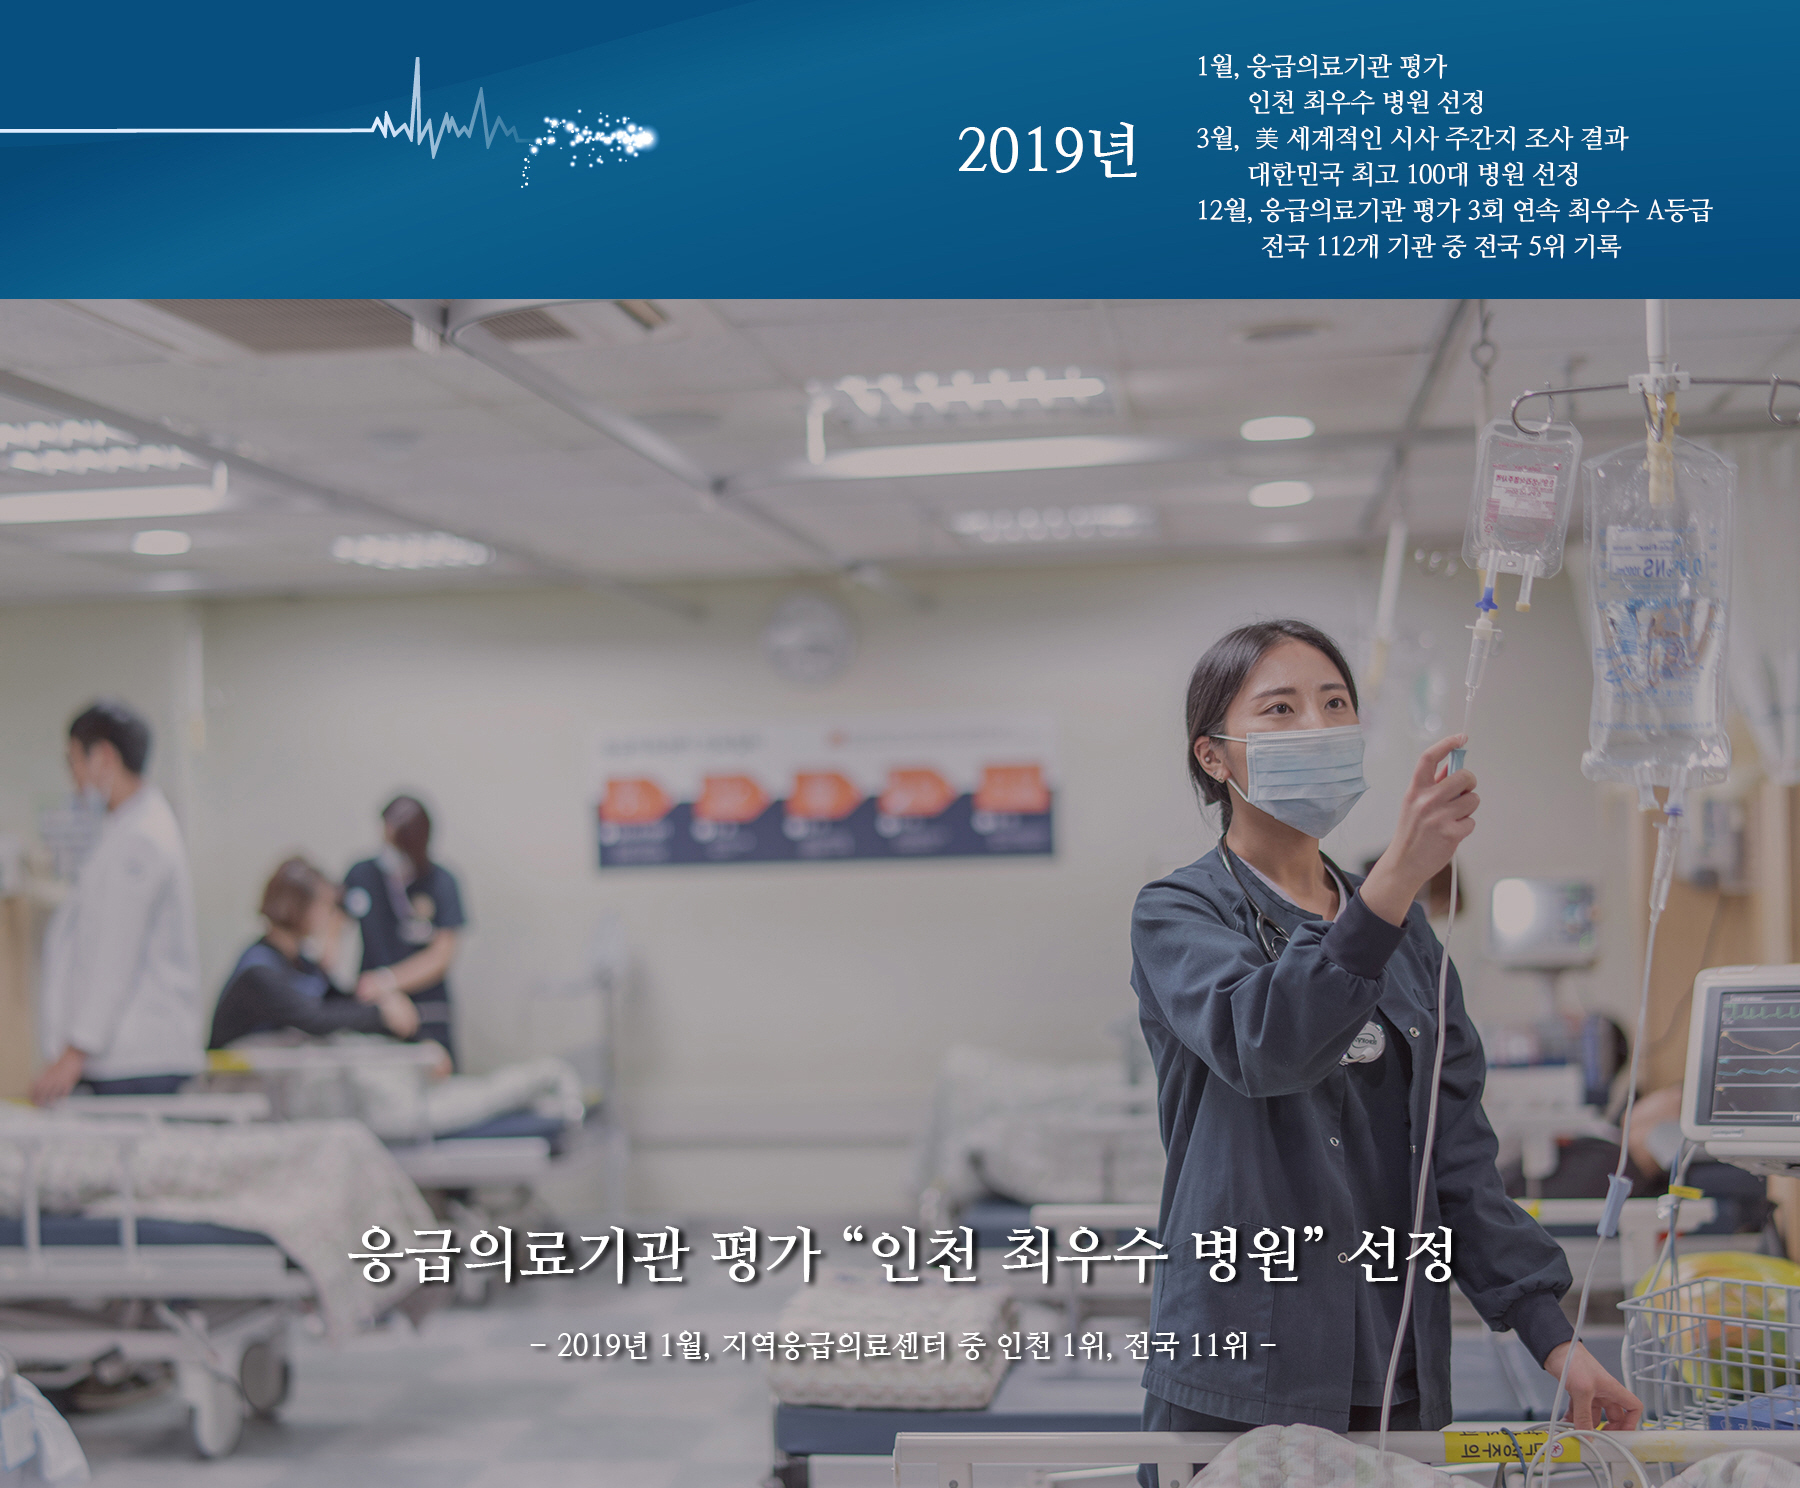 응급의료기관 평가 “인천 최우수 병원” 선정  - 2019년 1월, 지역응급의료센터 중 인천 1위, 전국 11위 -